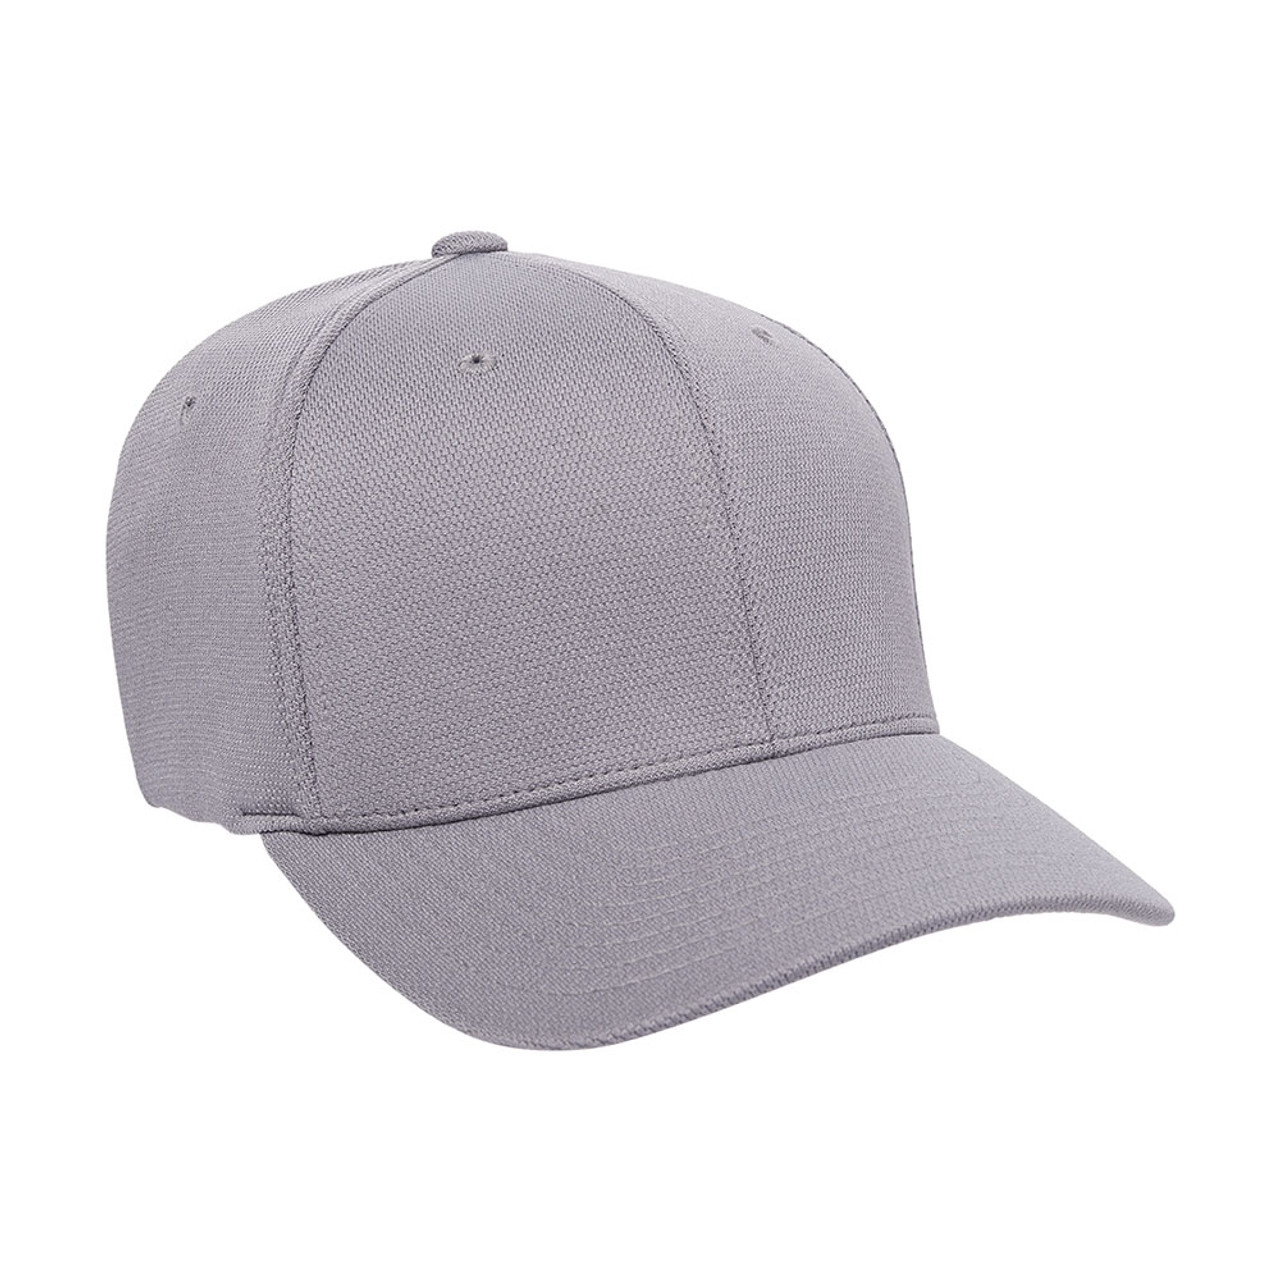 Flexfit Cool & Dry Performance Cap - One Dozen | The Jac Hat